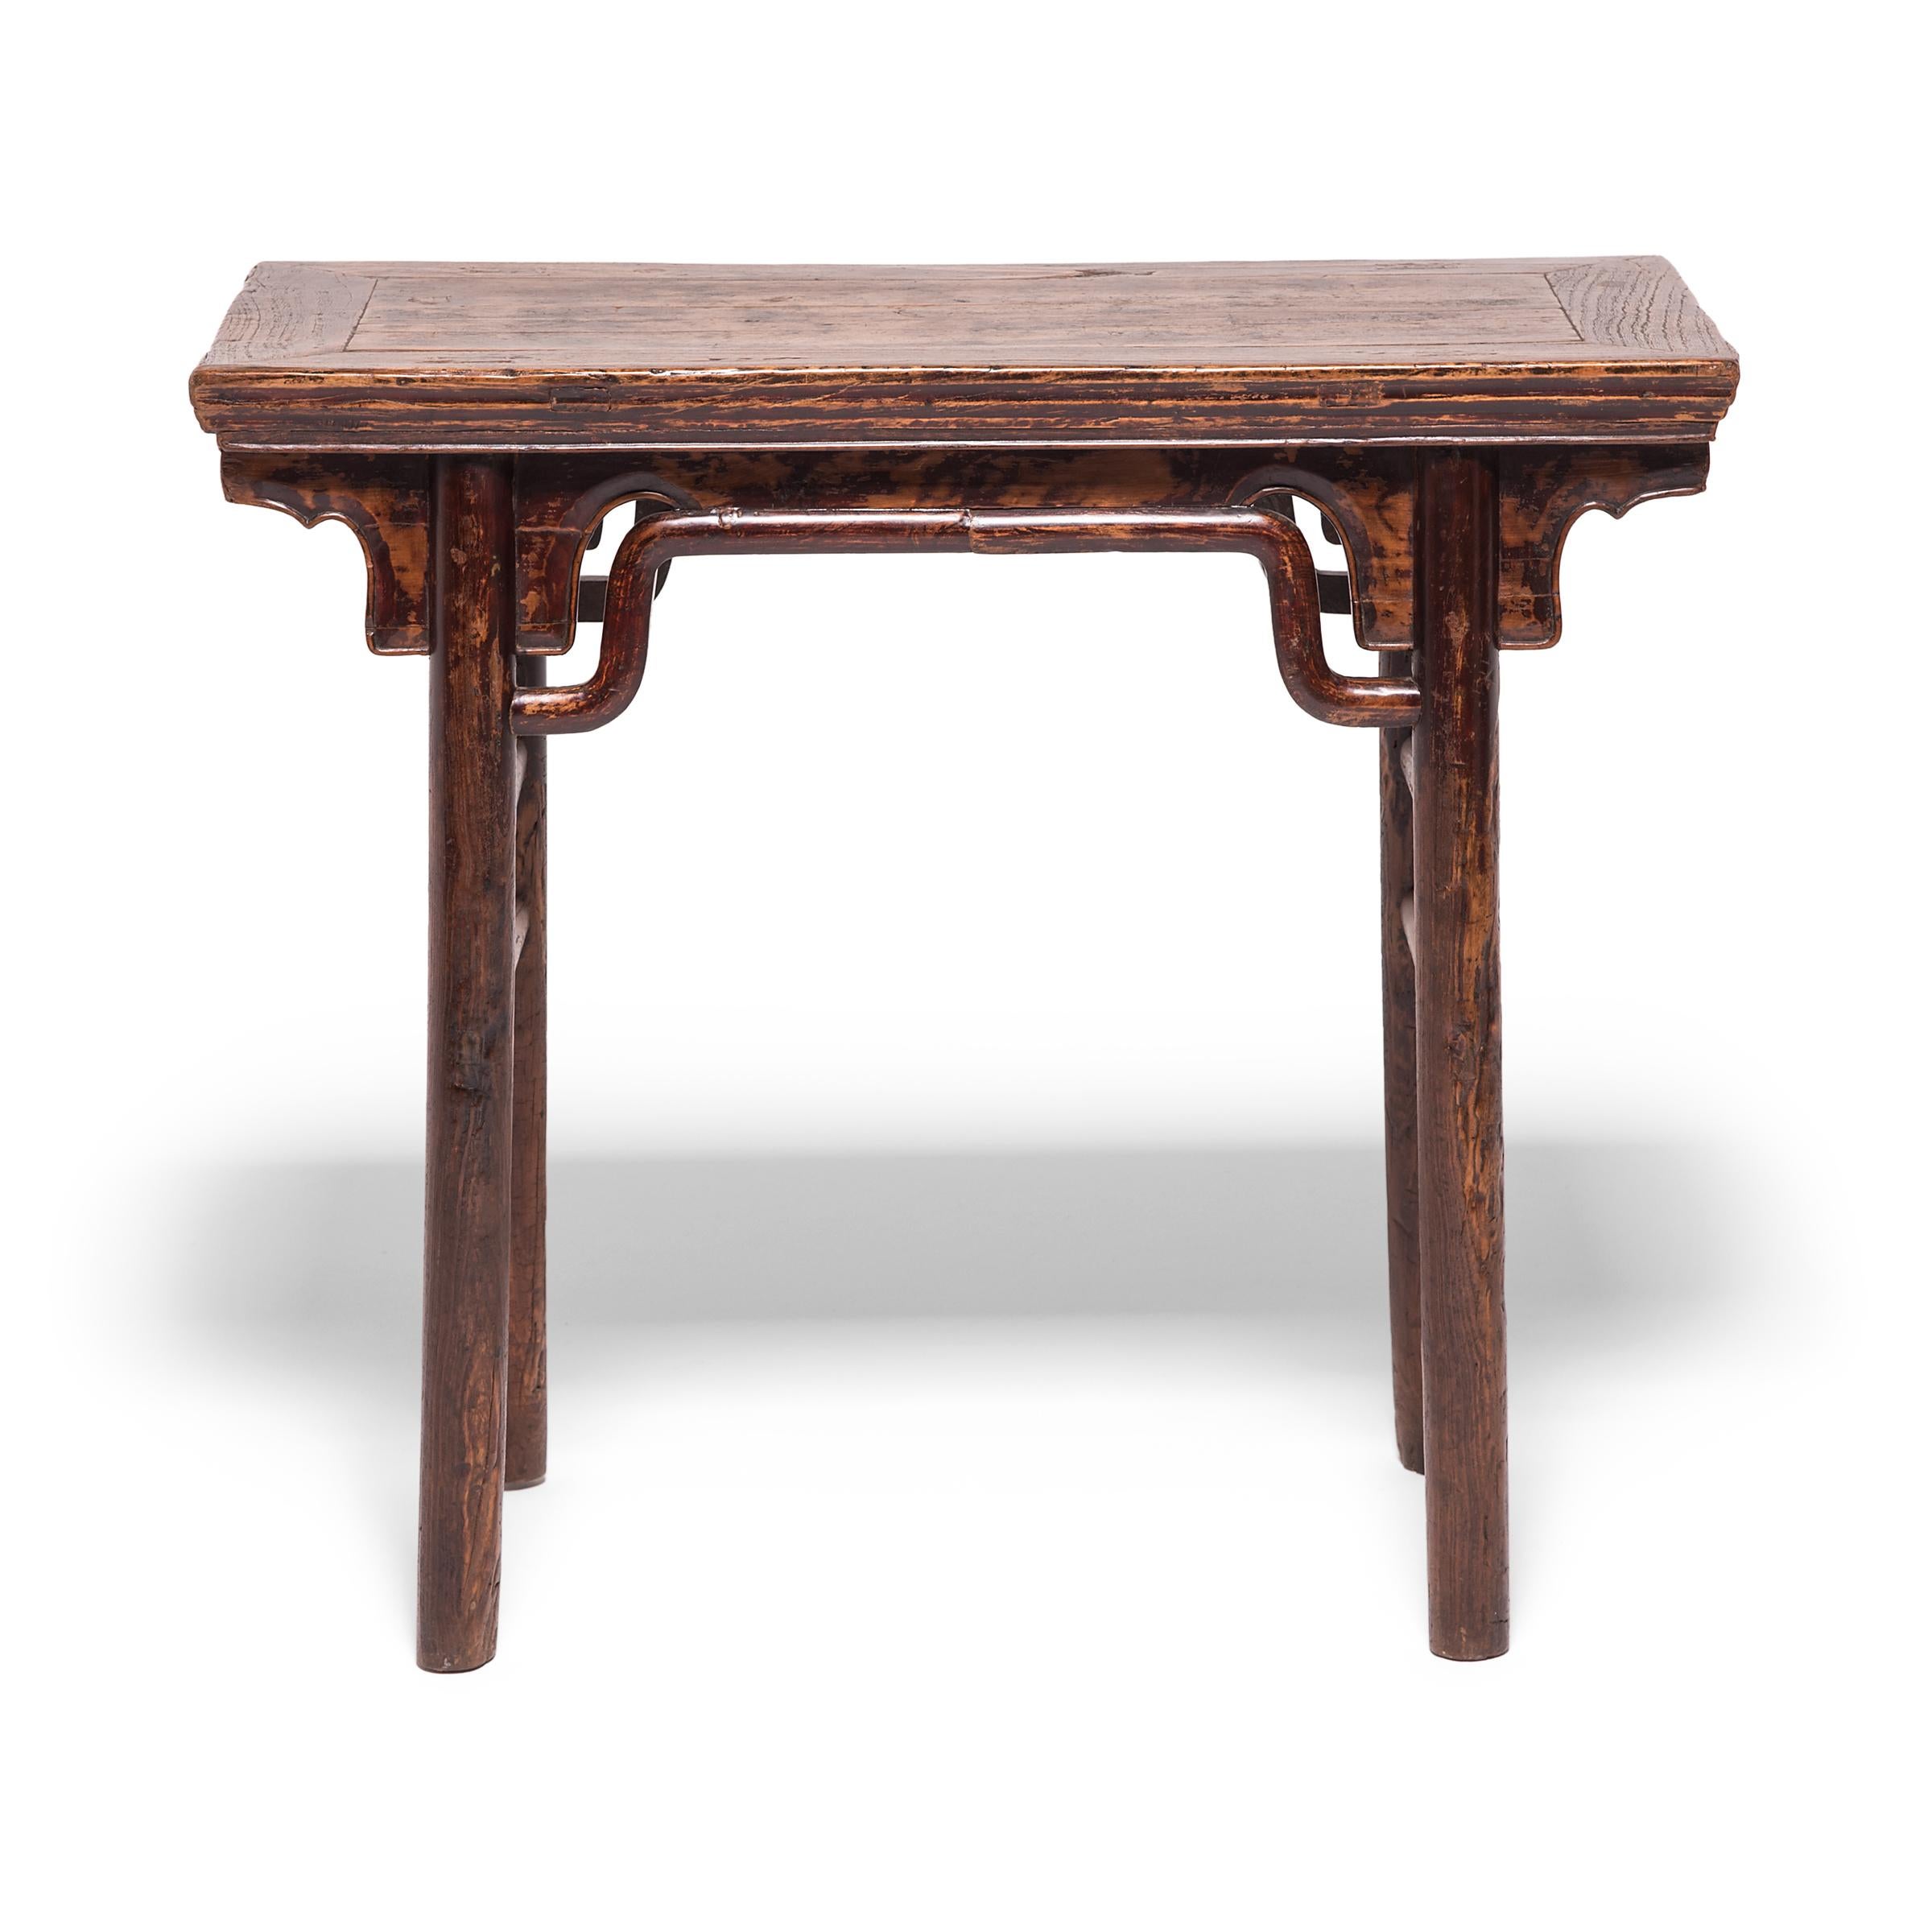 Das elegante Design dieses Tisches aus dem 19. Jahrhundert ist von früheren Möbeldesigns der Ming-Dynastie inspiriert, die von Sammlern sehr geschätzt werden. Klare Linien, einfache Buckelstrecker und eine schön abgenutzte Patina erhöhen den Wert